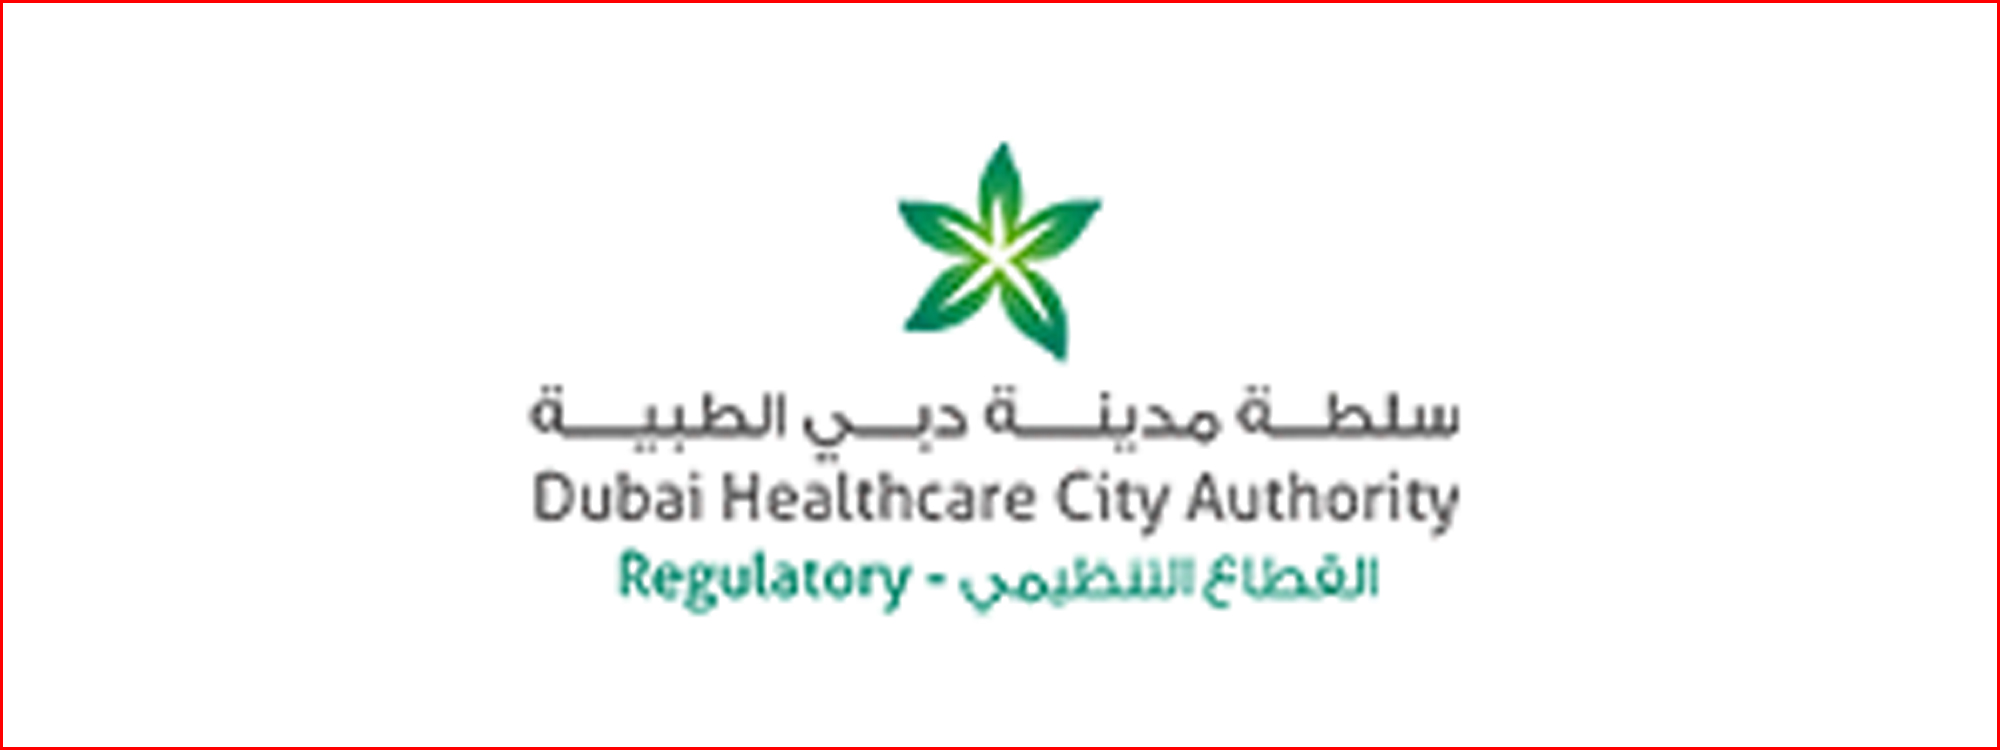 Dubai Healthcare City Authority (DHCA)